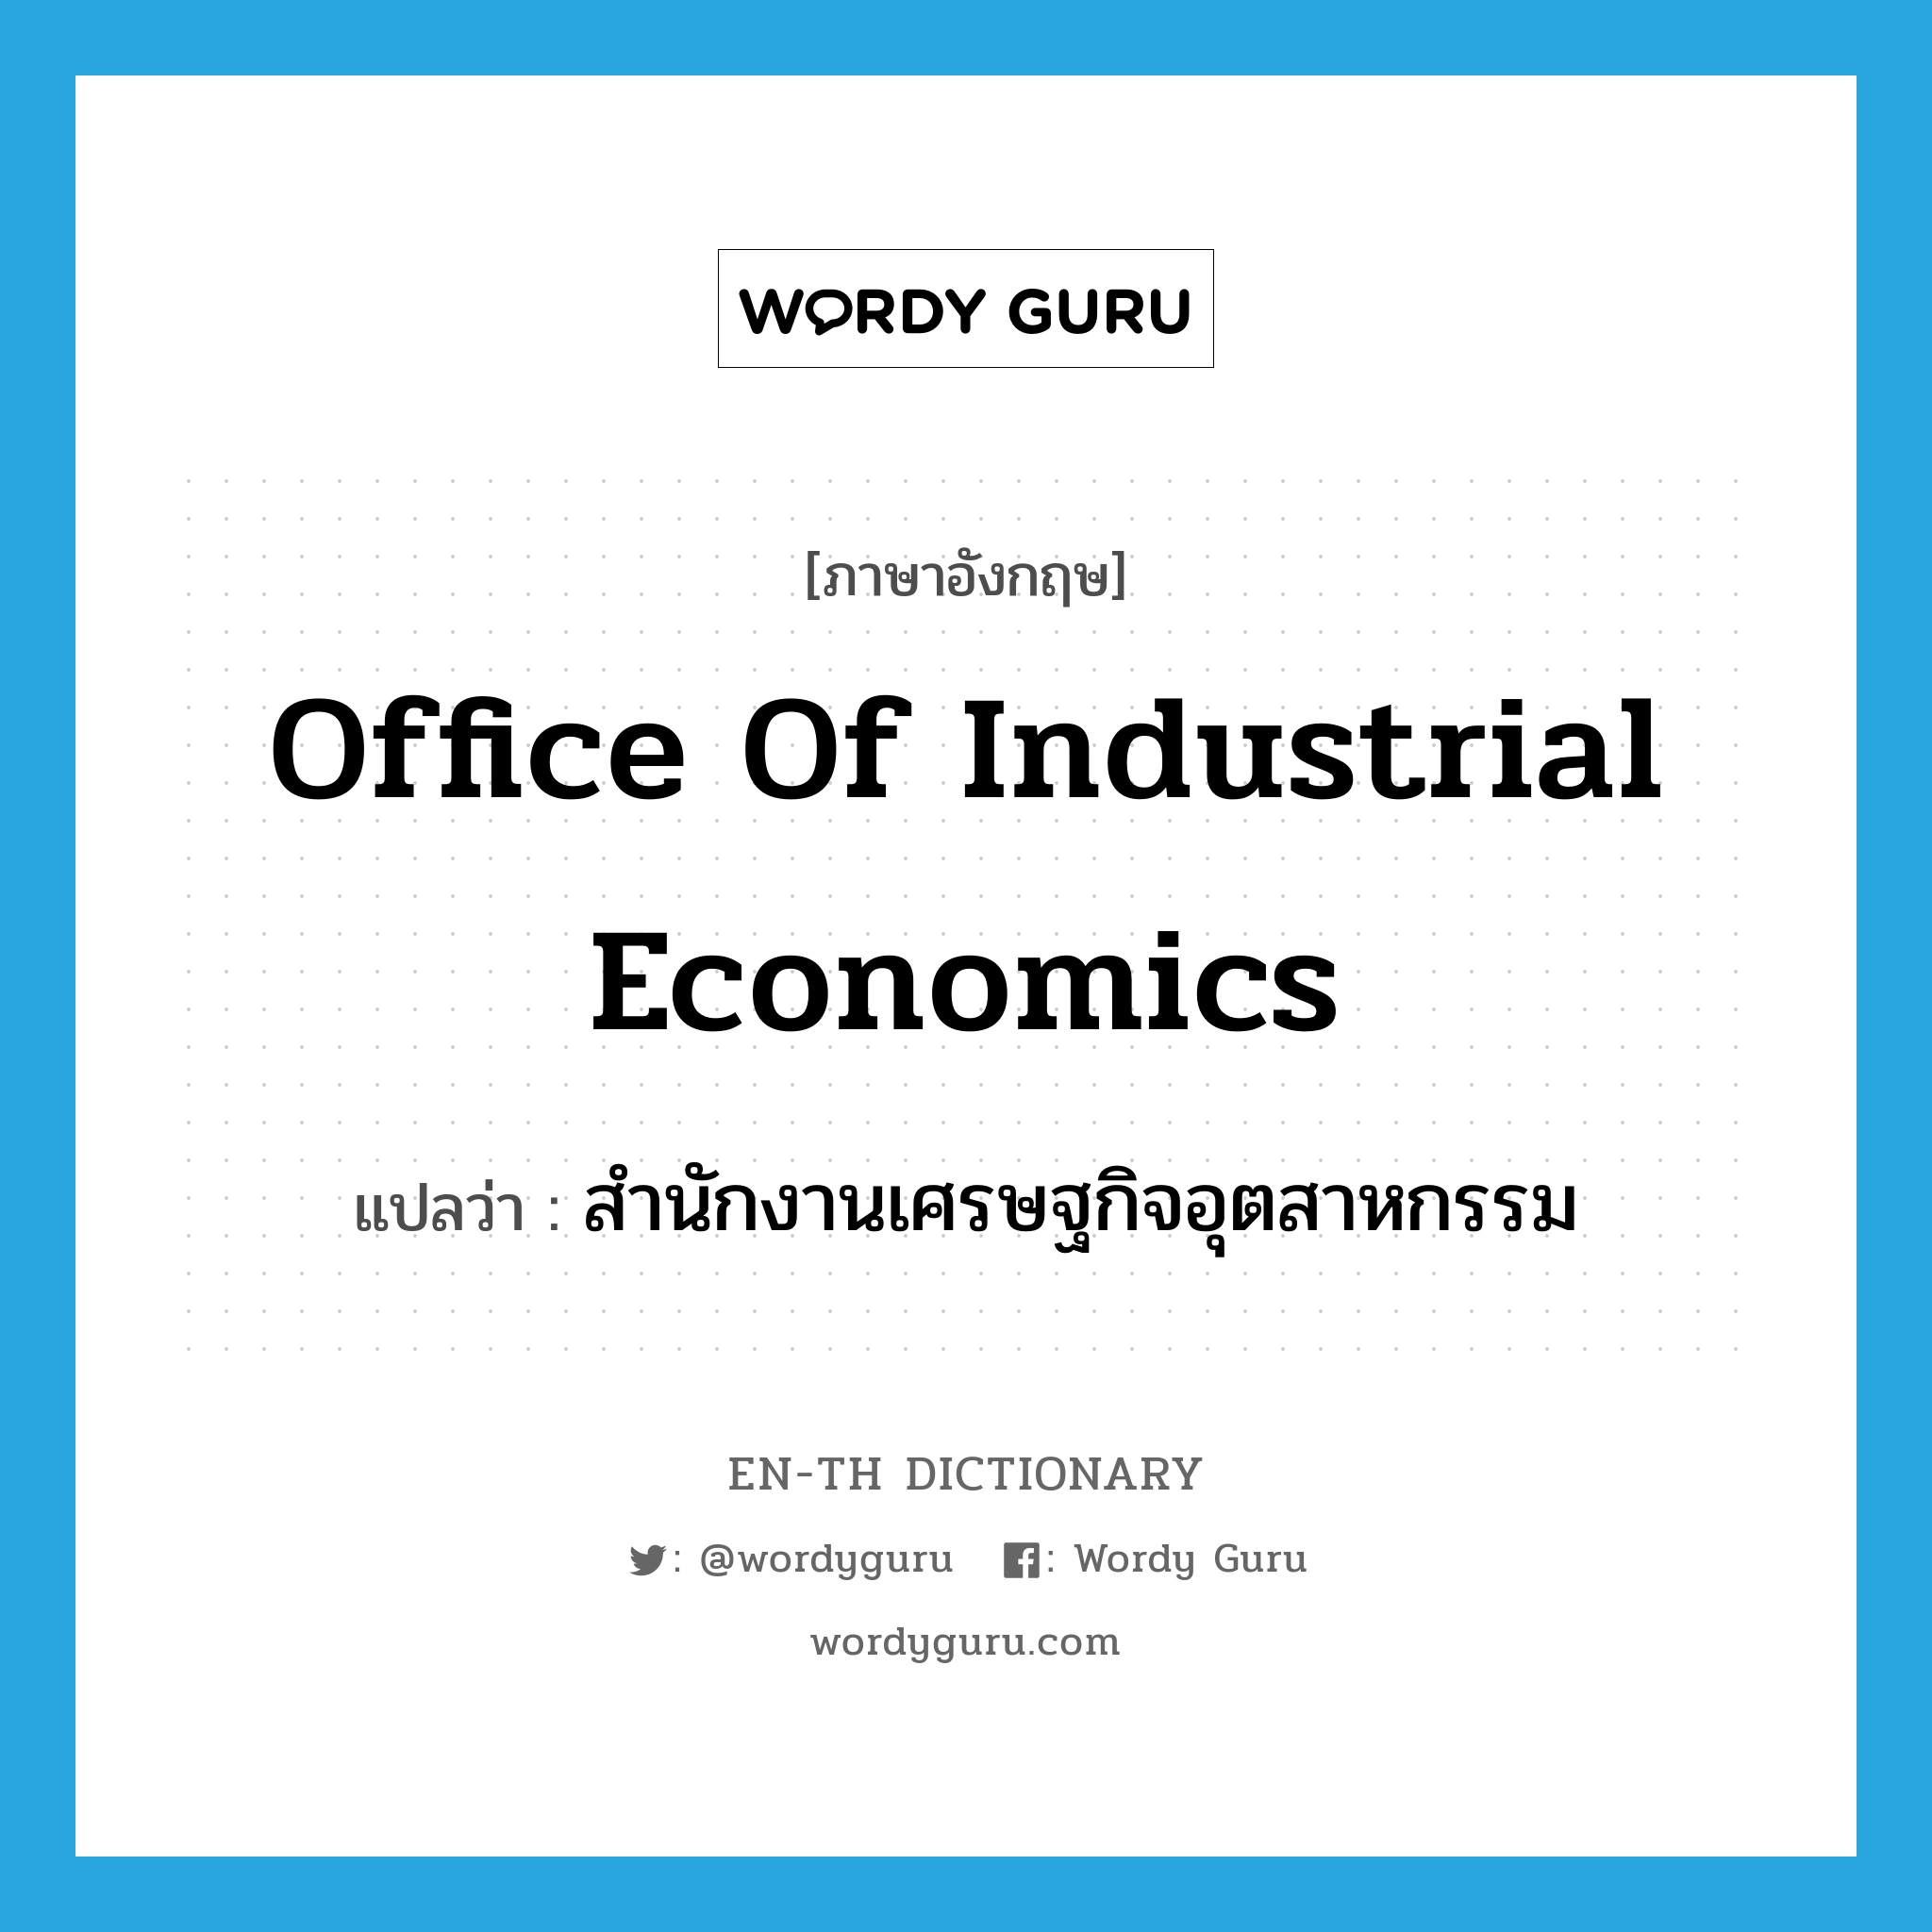 สำนักงานเศรษฐกิจอุตสาหกรรม ภาษาอังกฤษ?, คำศัพท์ภาษาอังกฤษ สำนักงานเศรษฐกิจอุตสาหกรรม แปลว่า Office of Industrial Economics ประเภท N หมวด N